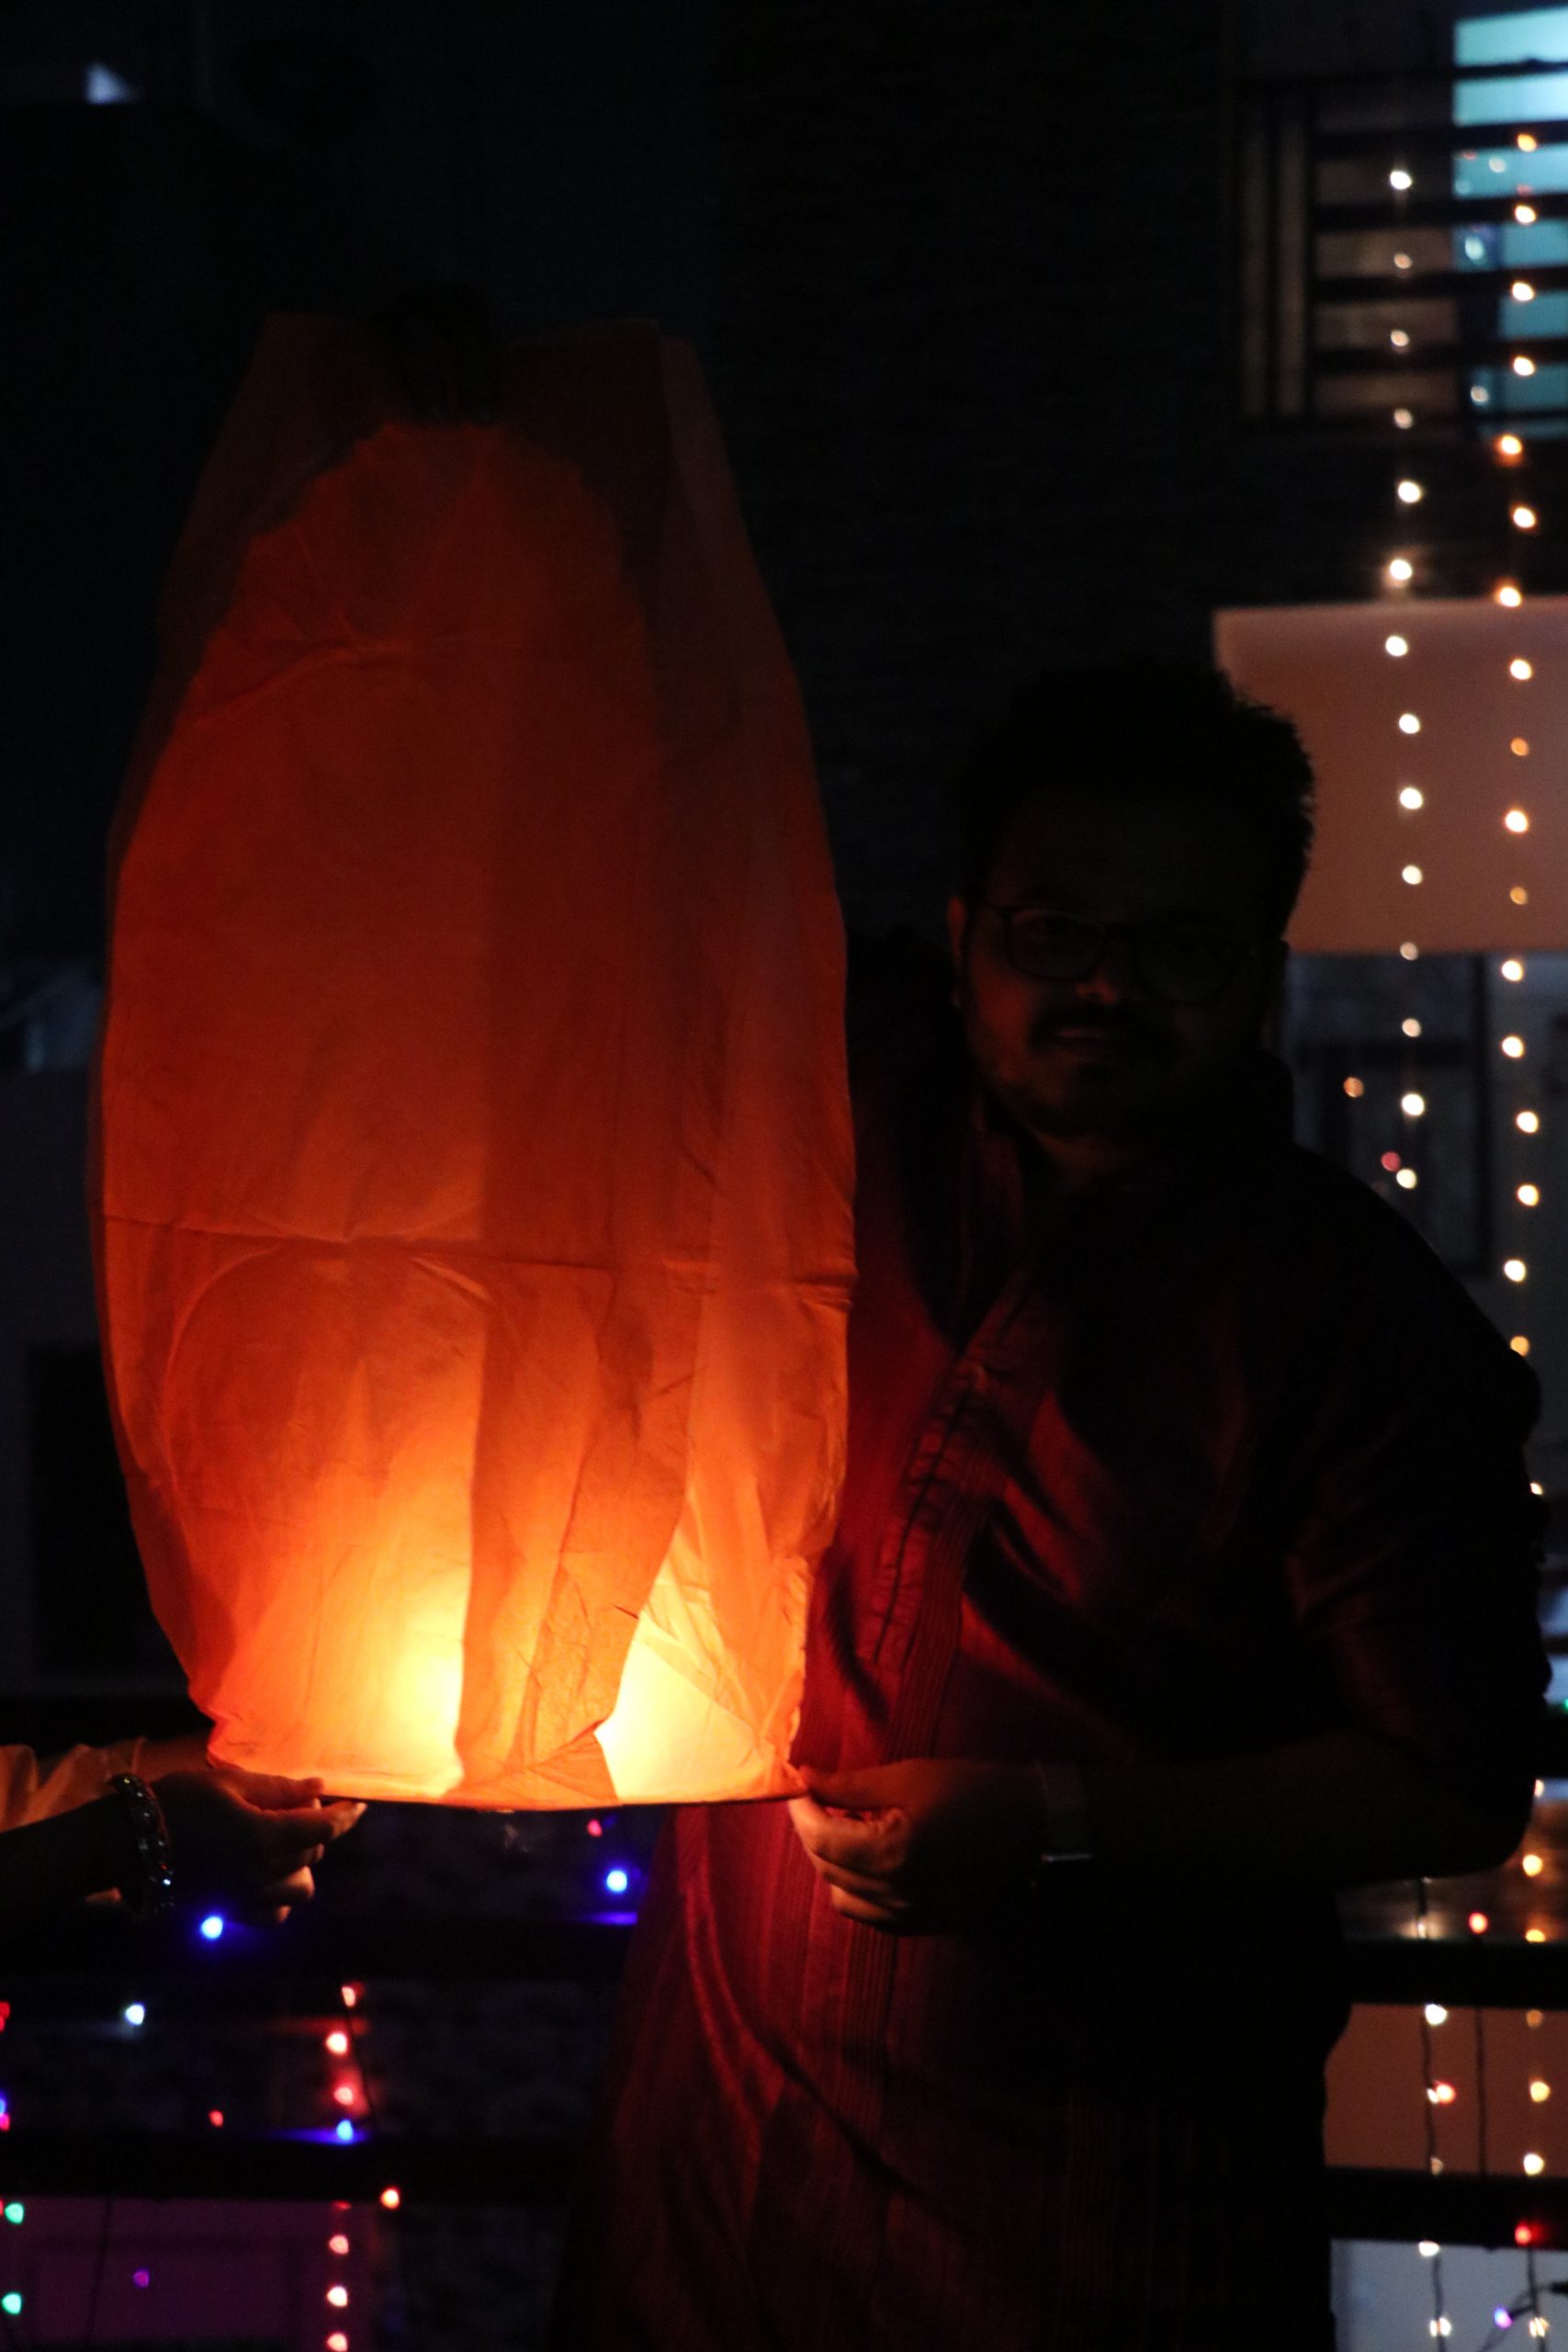 A paper lantern